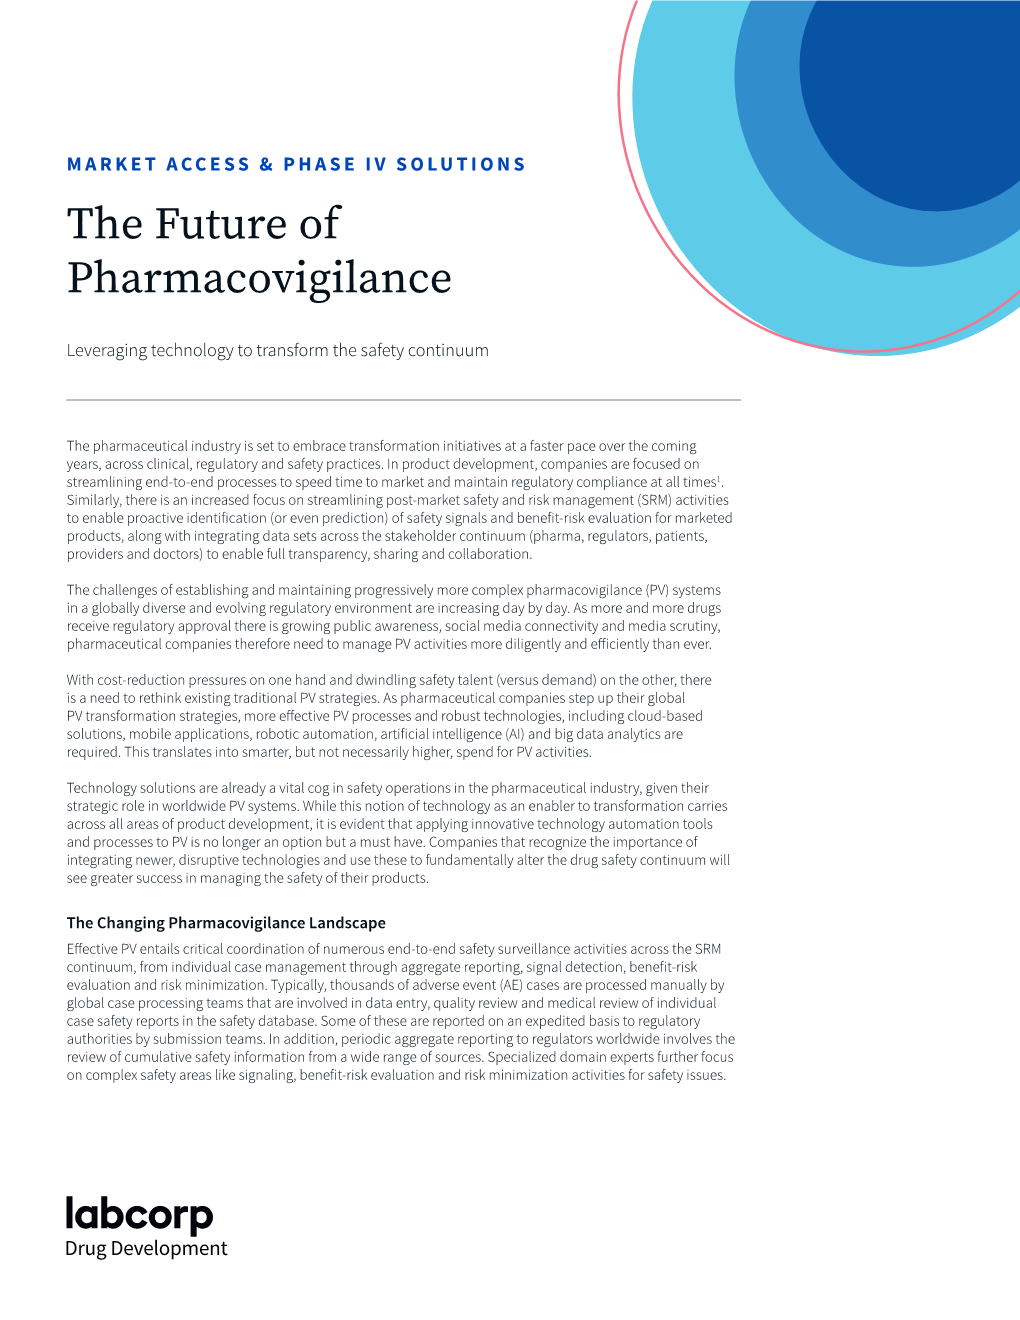 The Future of Pharmacovigilance